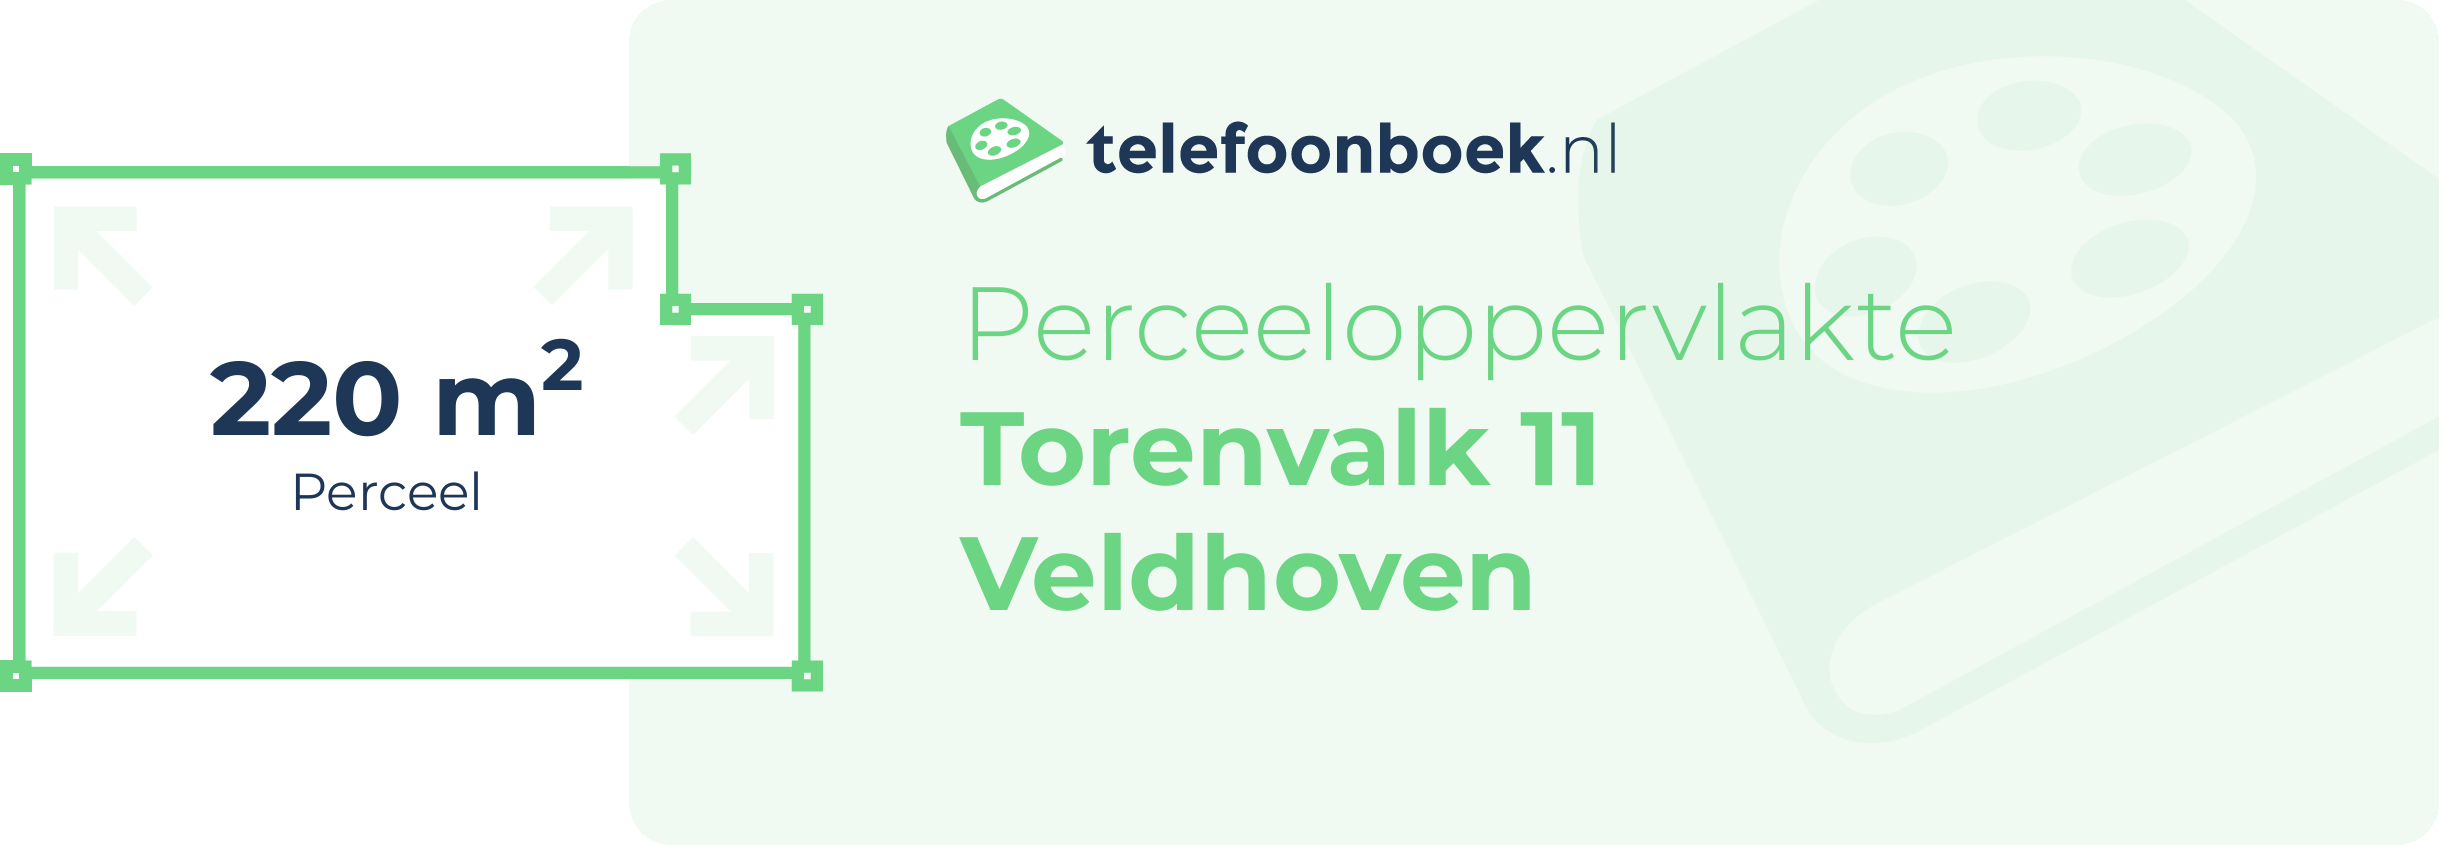 Perceeloppervlakte Torenvalk 11 Veldhoven